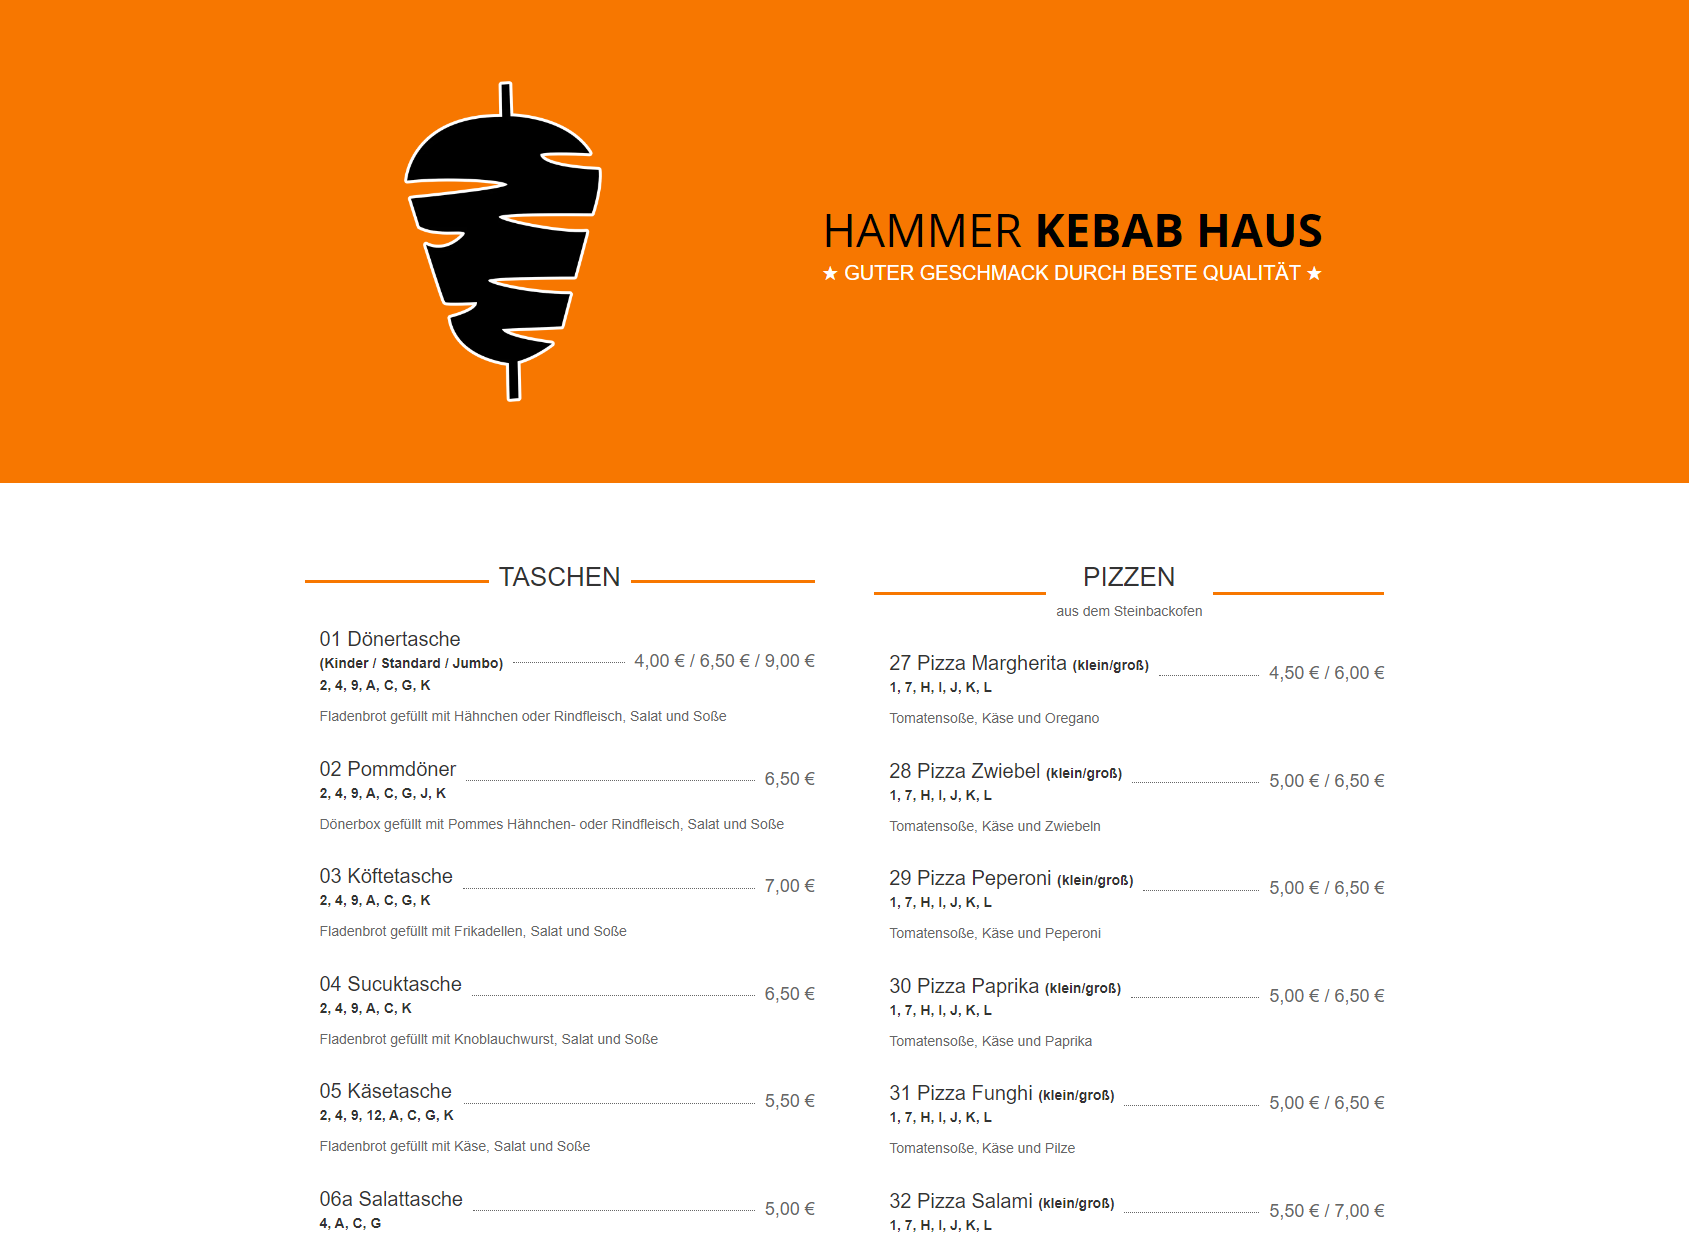 Hammer Kebab Haus